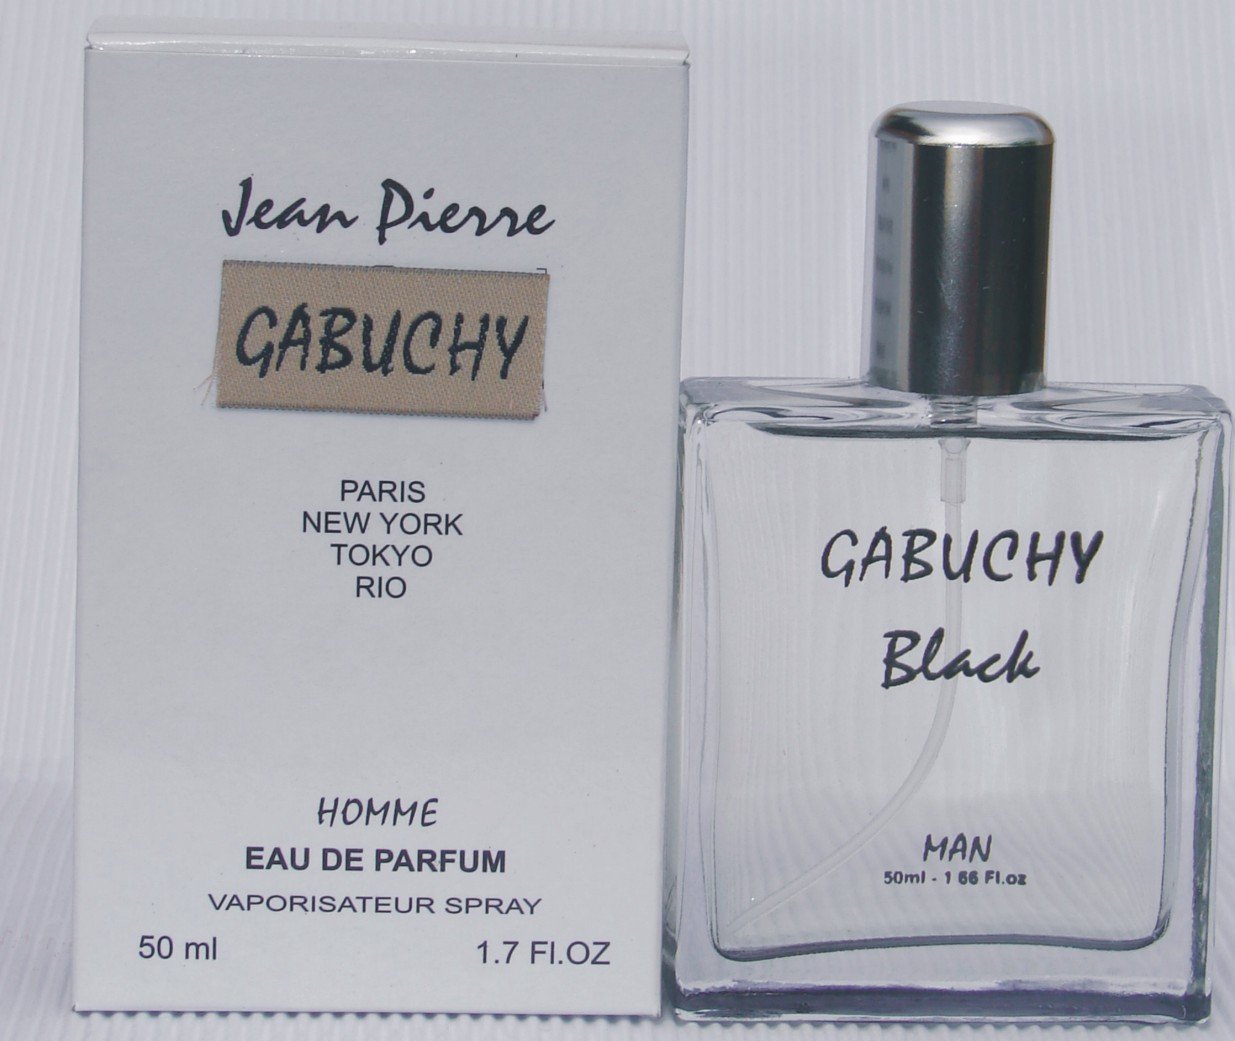 Perfume for man Gabuchy Black products, buy Perfume for man Gabuchy